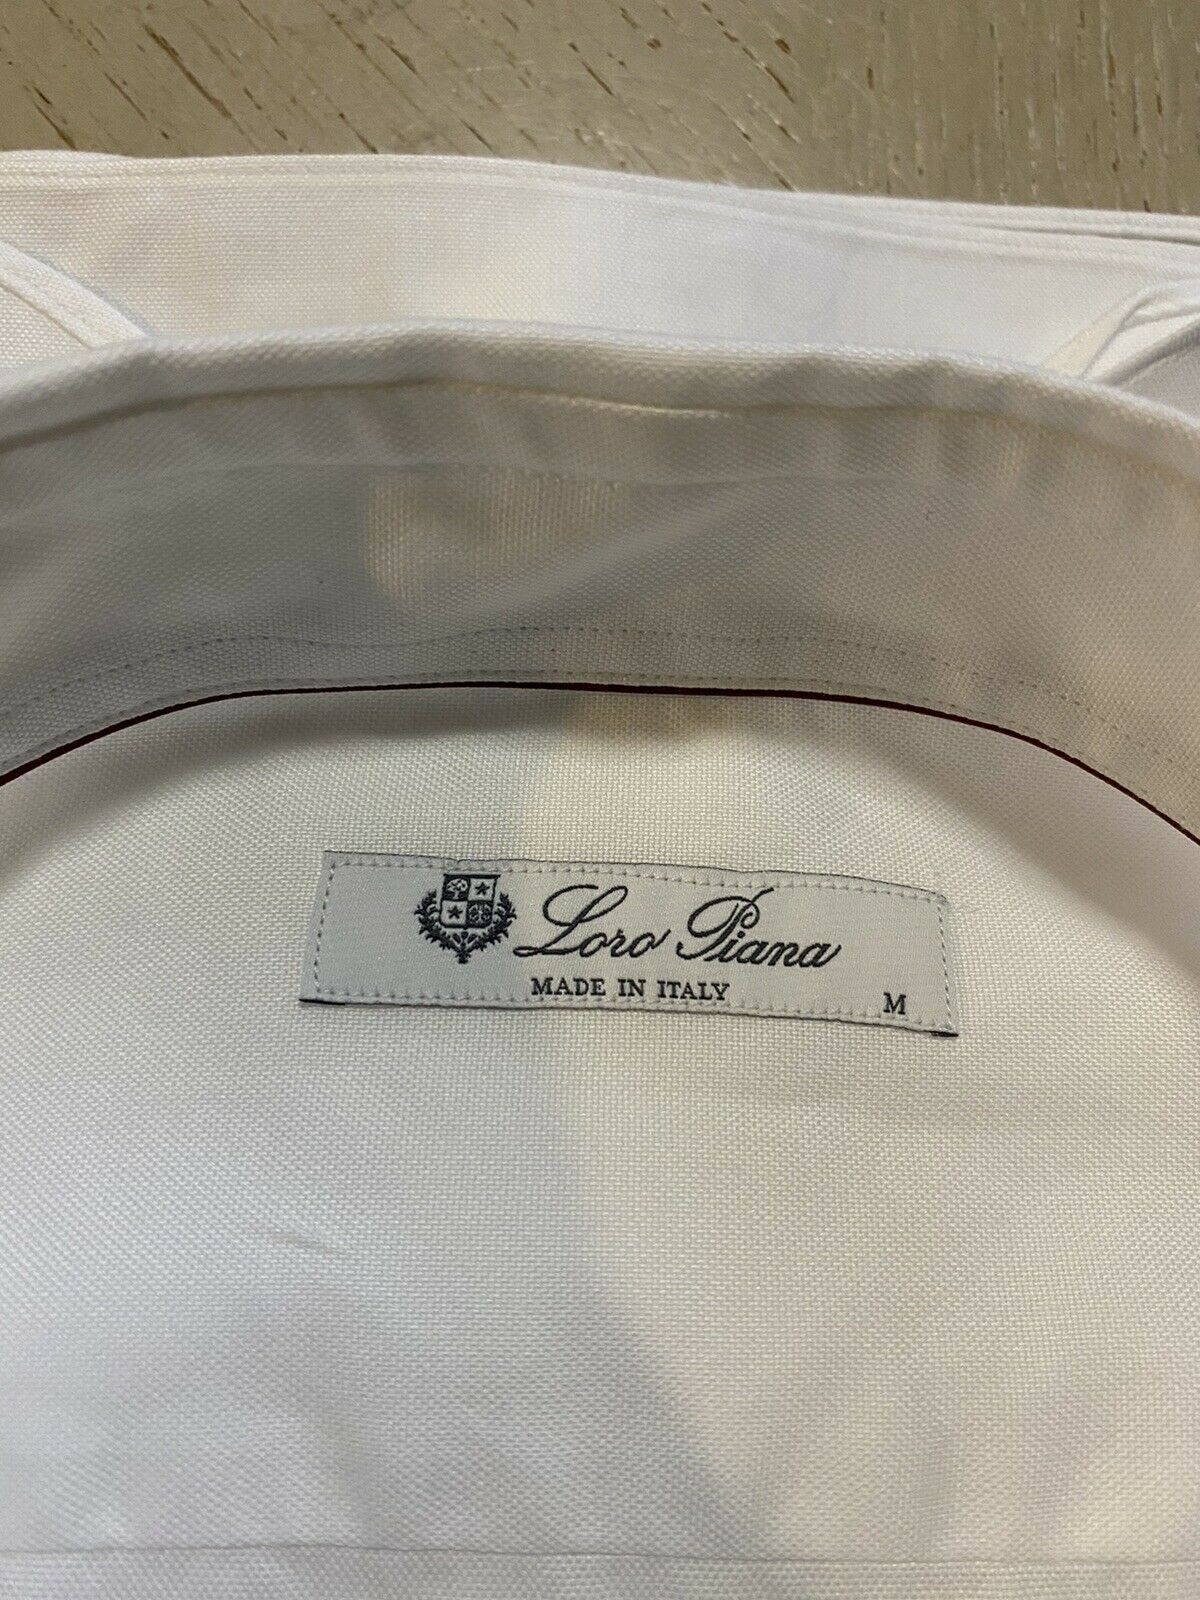 NWT $495 Loro Piana Мужская классическая рубашка белого цвета, размер M, Италия